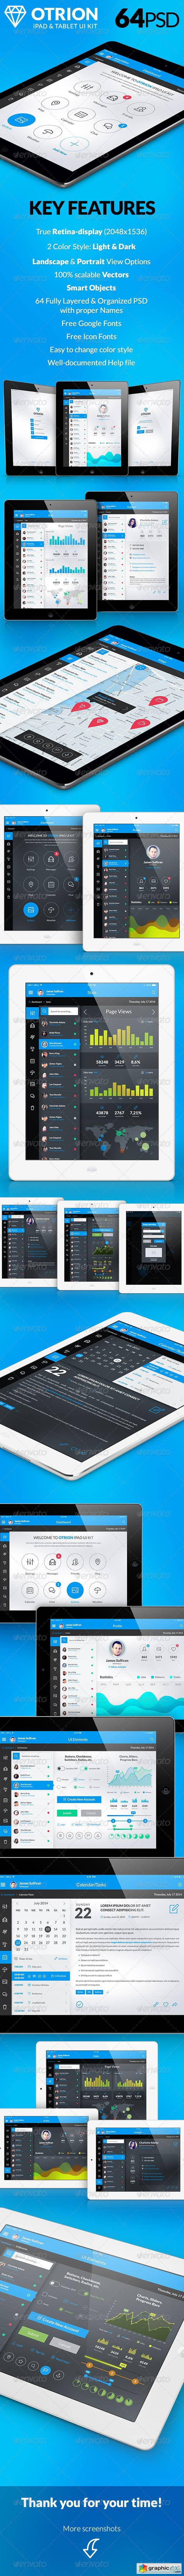 Otrion - iPad & Tablet App Design UI Kit